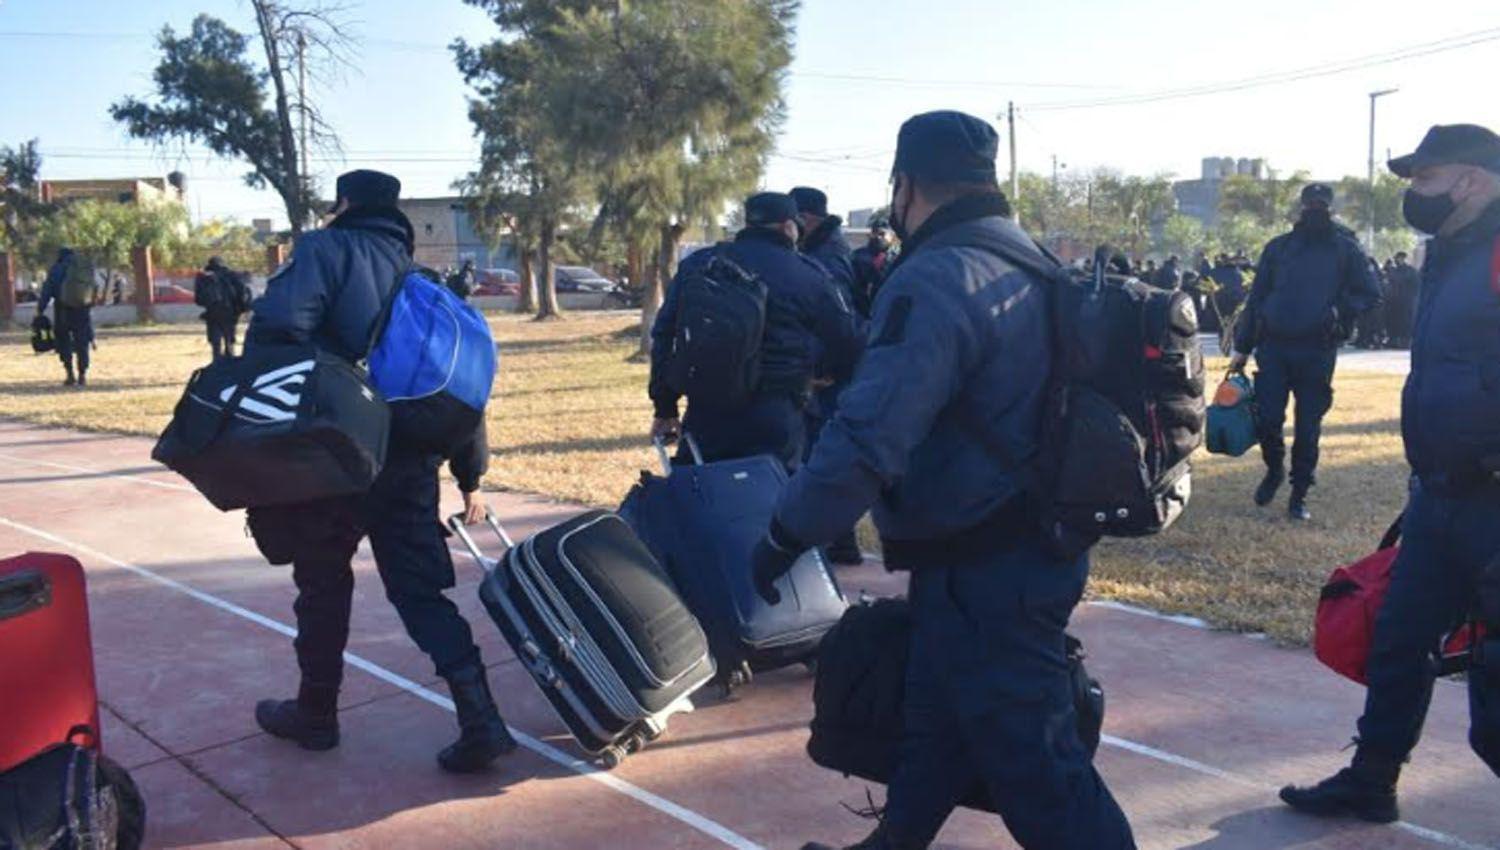 Maacutes de 1500 efectivos de la Policiacutea de la Provincia partieron con destino a los liacutemites de Santiago